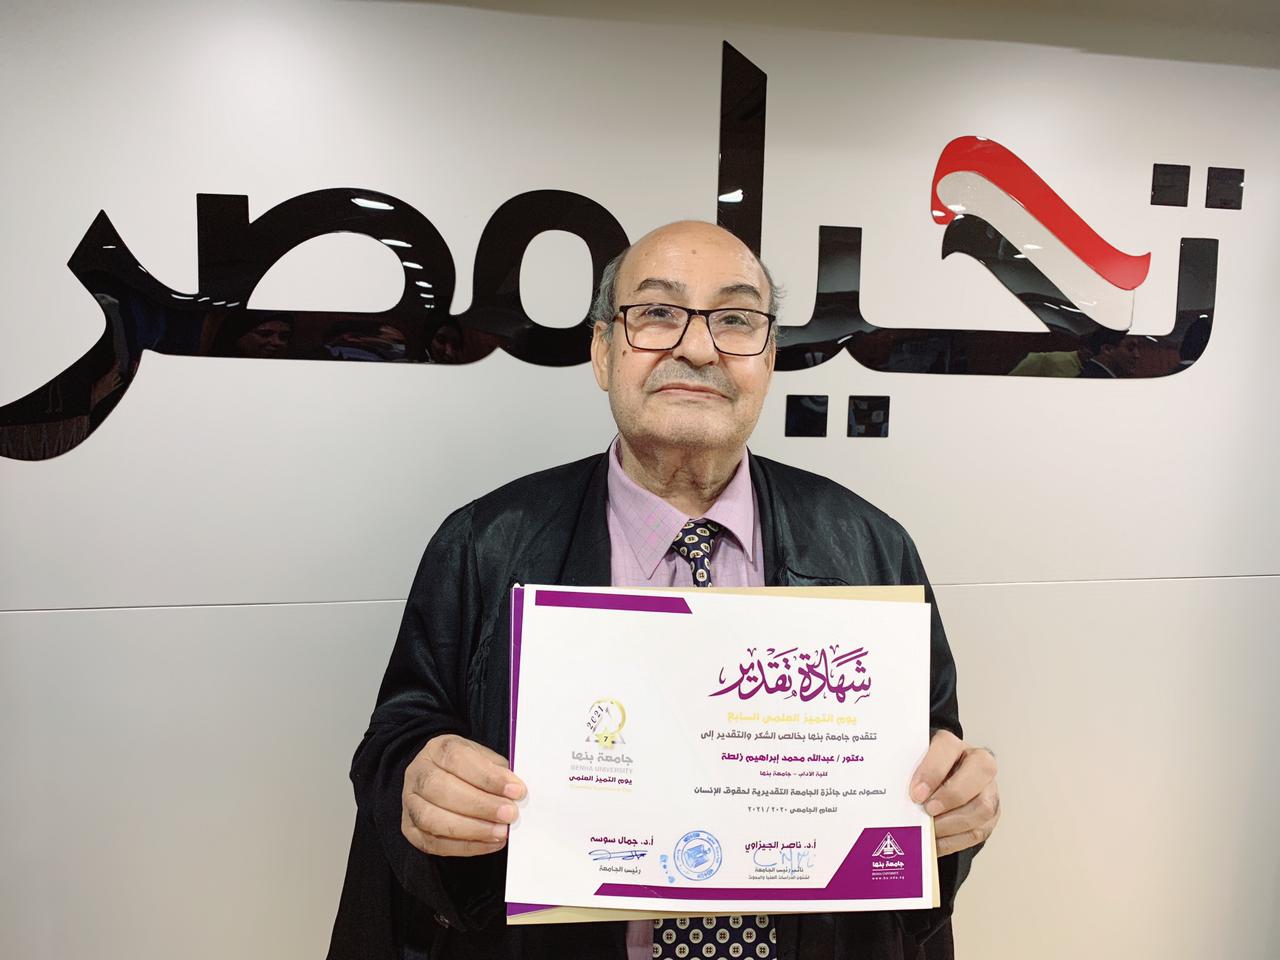  الدكتور عبدالله زلطة يفوز بجائزة جامعة بنها التقديرية (4)